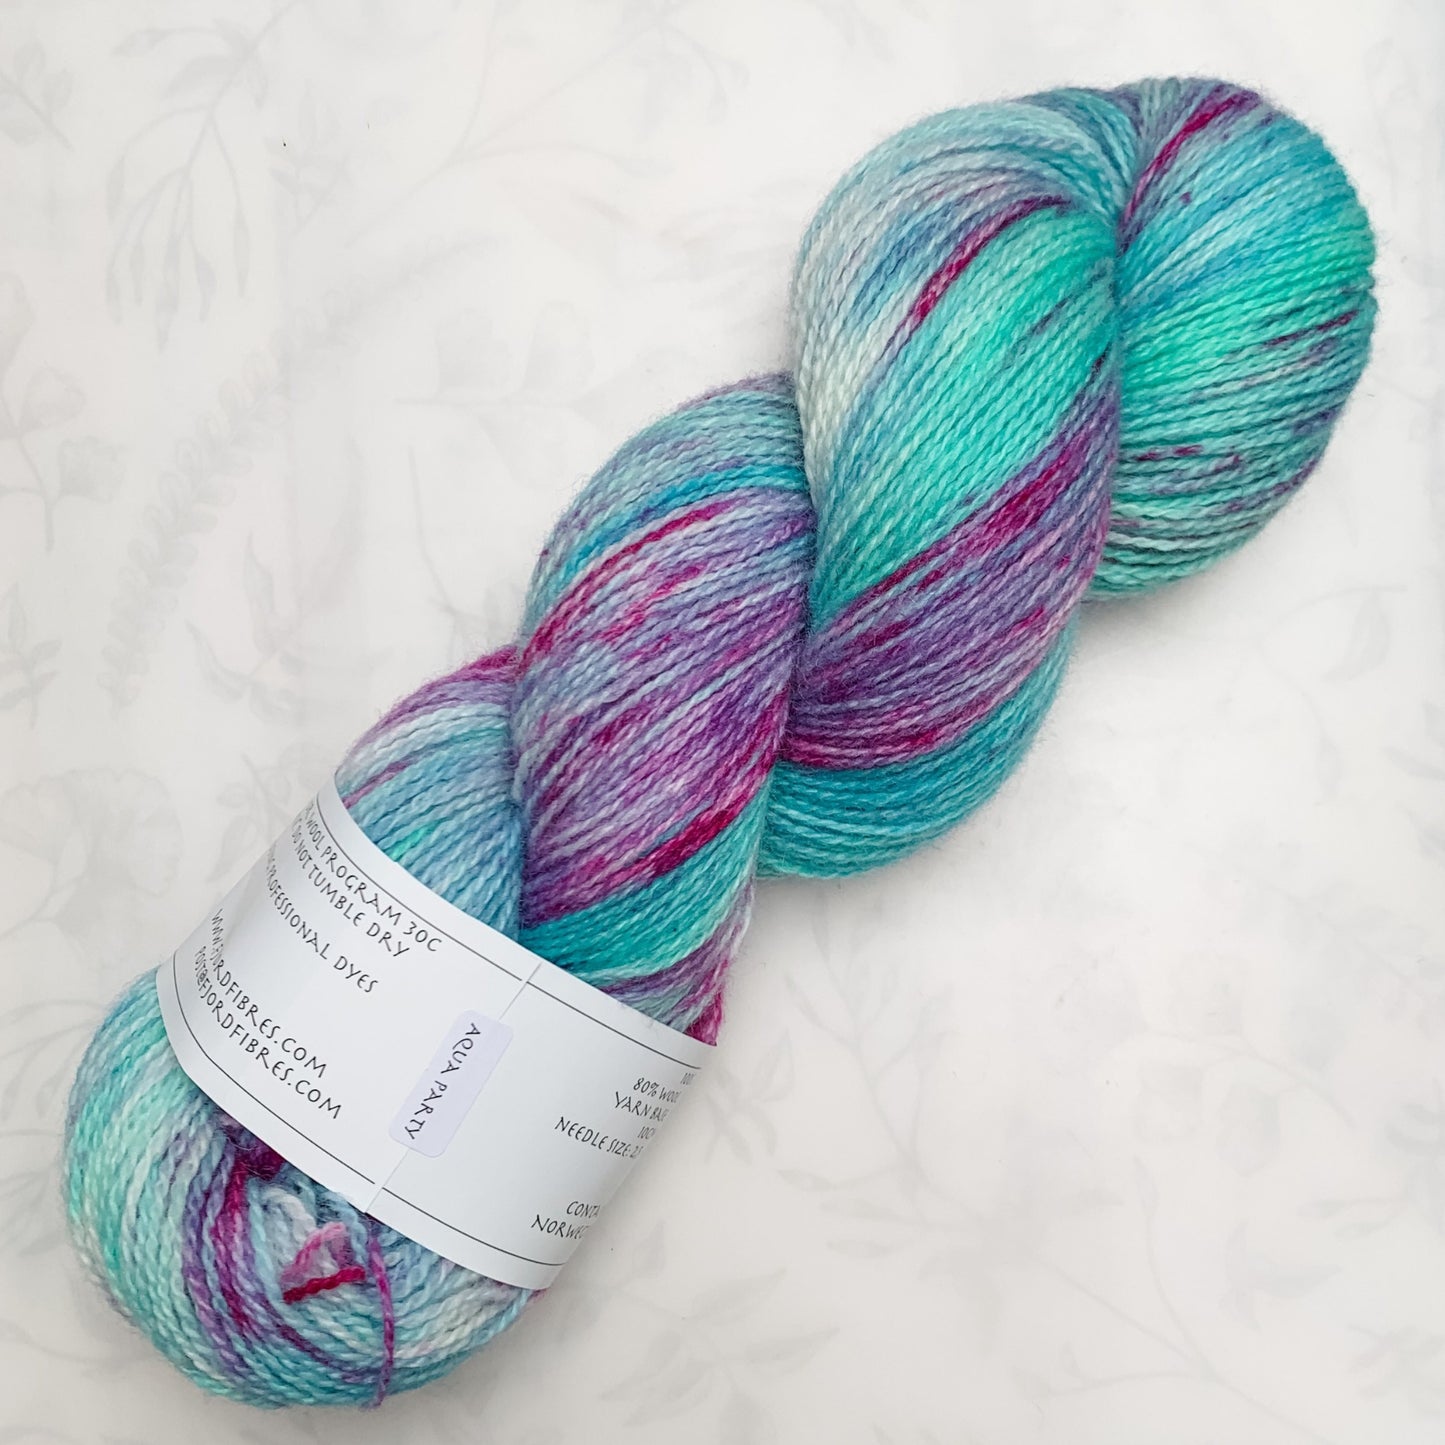 Aqua Party - Trollfjord sock - Variegated Yarn - Hand dyed yarn